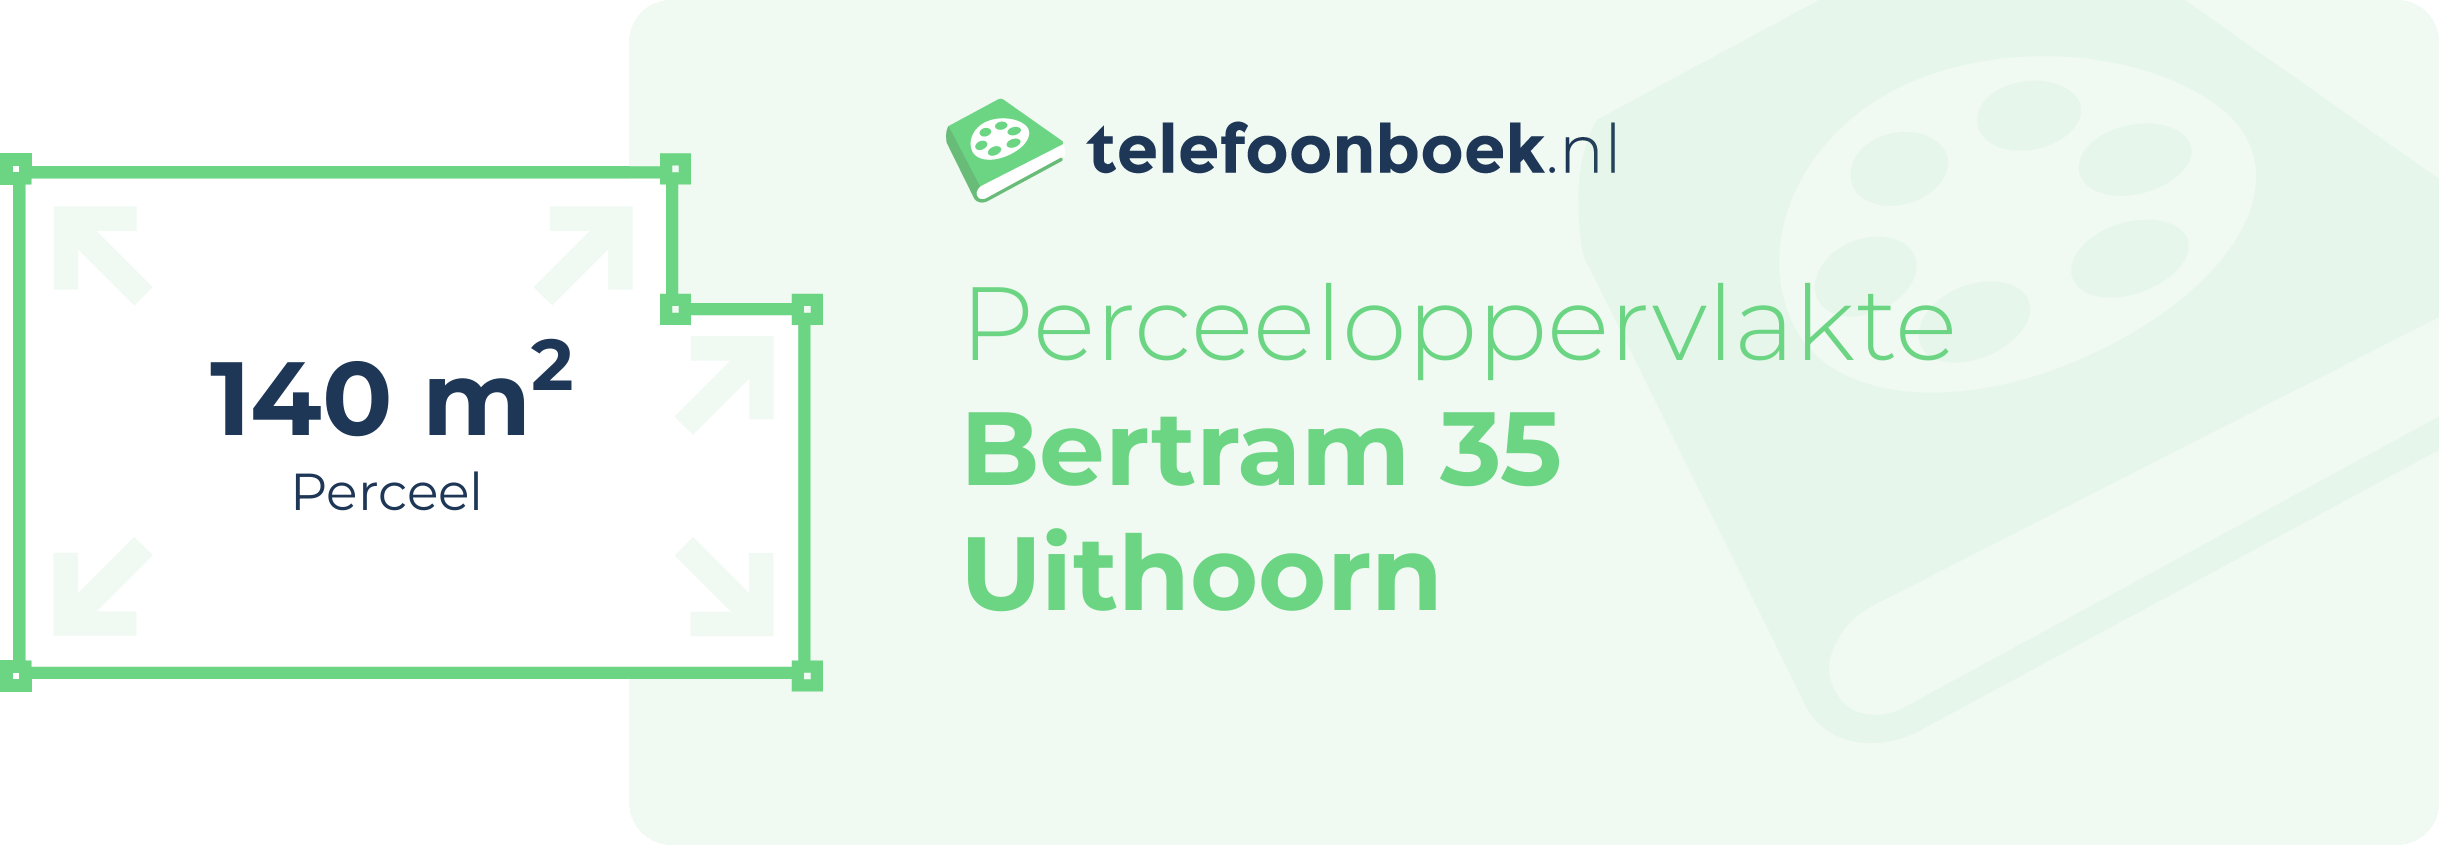 Perceeloppervlakte Bertram 35 Uithoorn